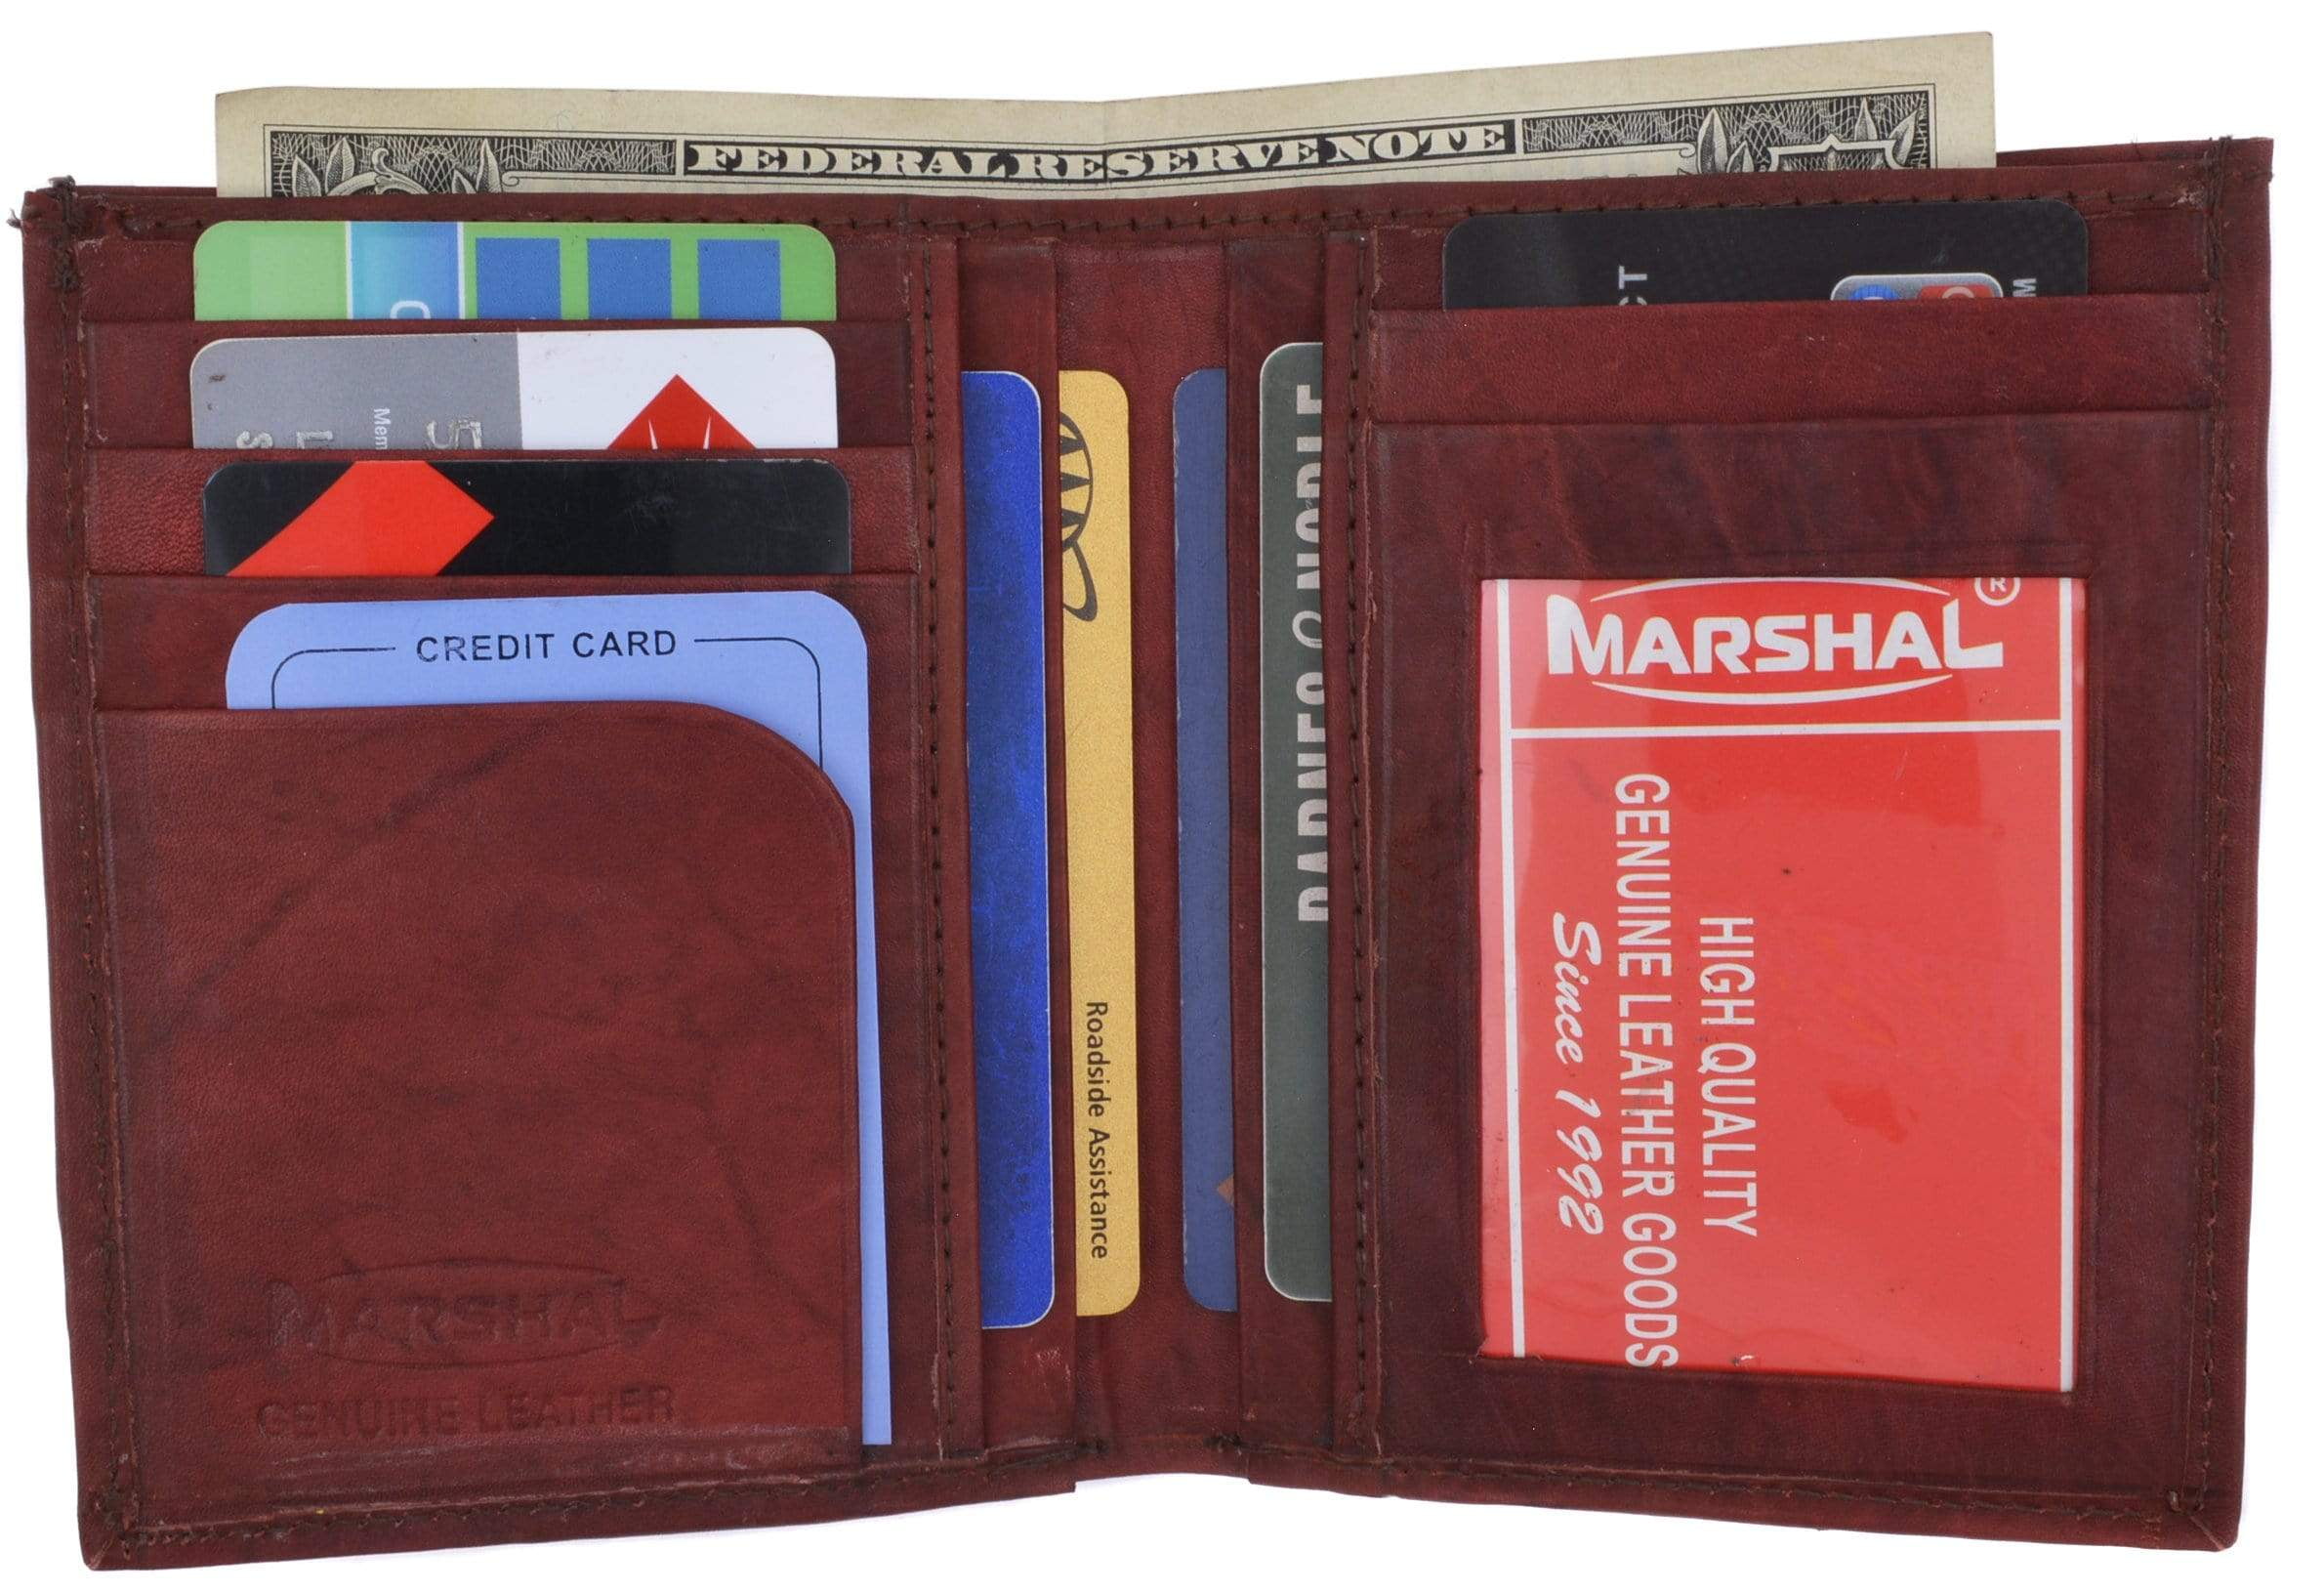 Pre-Owned LOUIS VUITTON Porto Papier Zip Bi-Fold Wallet with Pass Case  Monogram M61207 SP0025 (Good) 